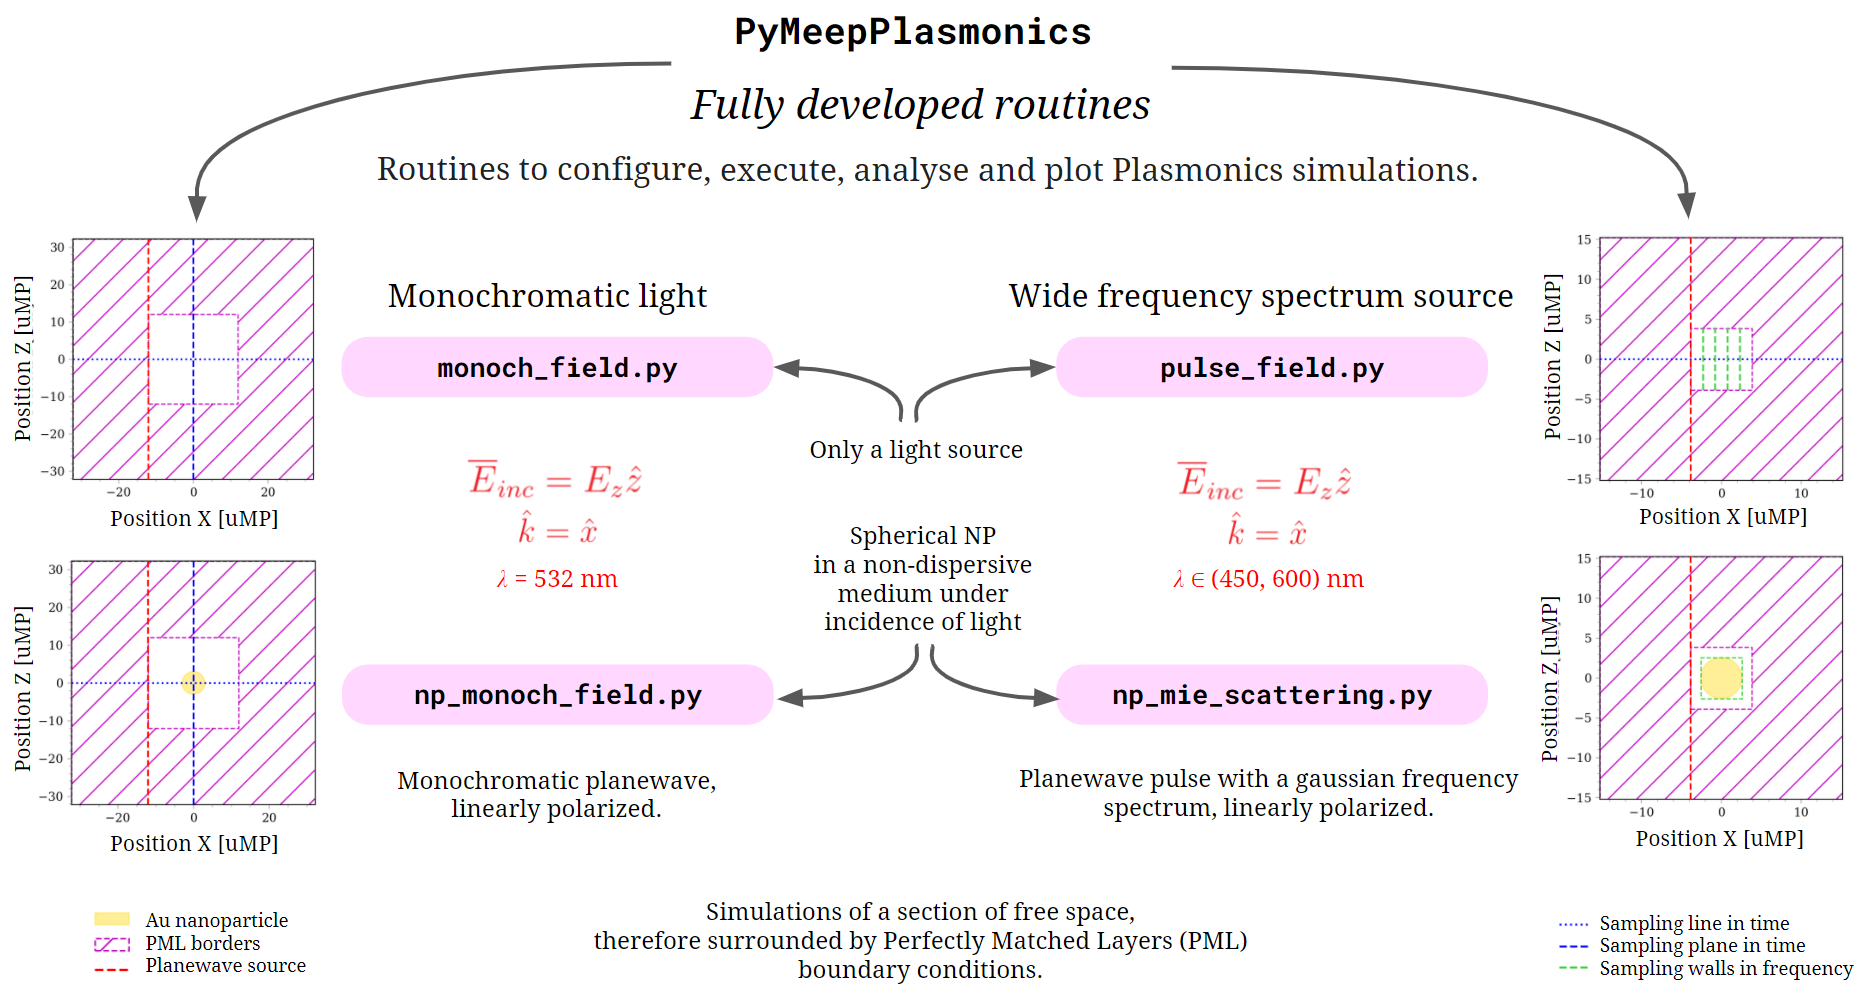 PyMeepPlasmonics Routines